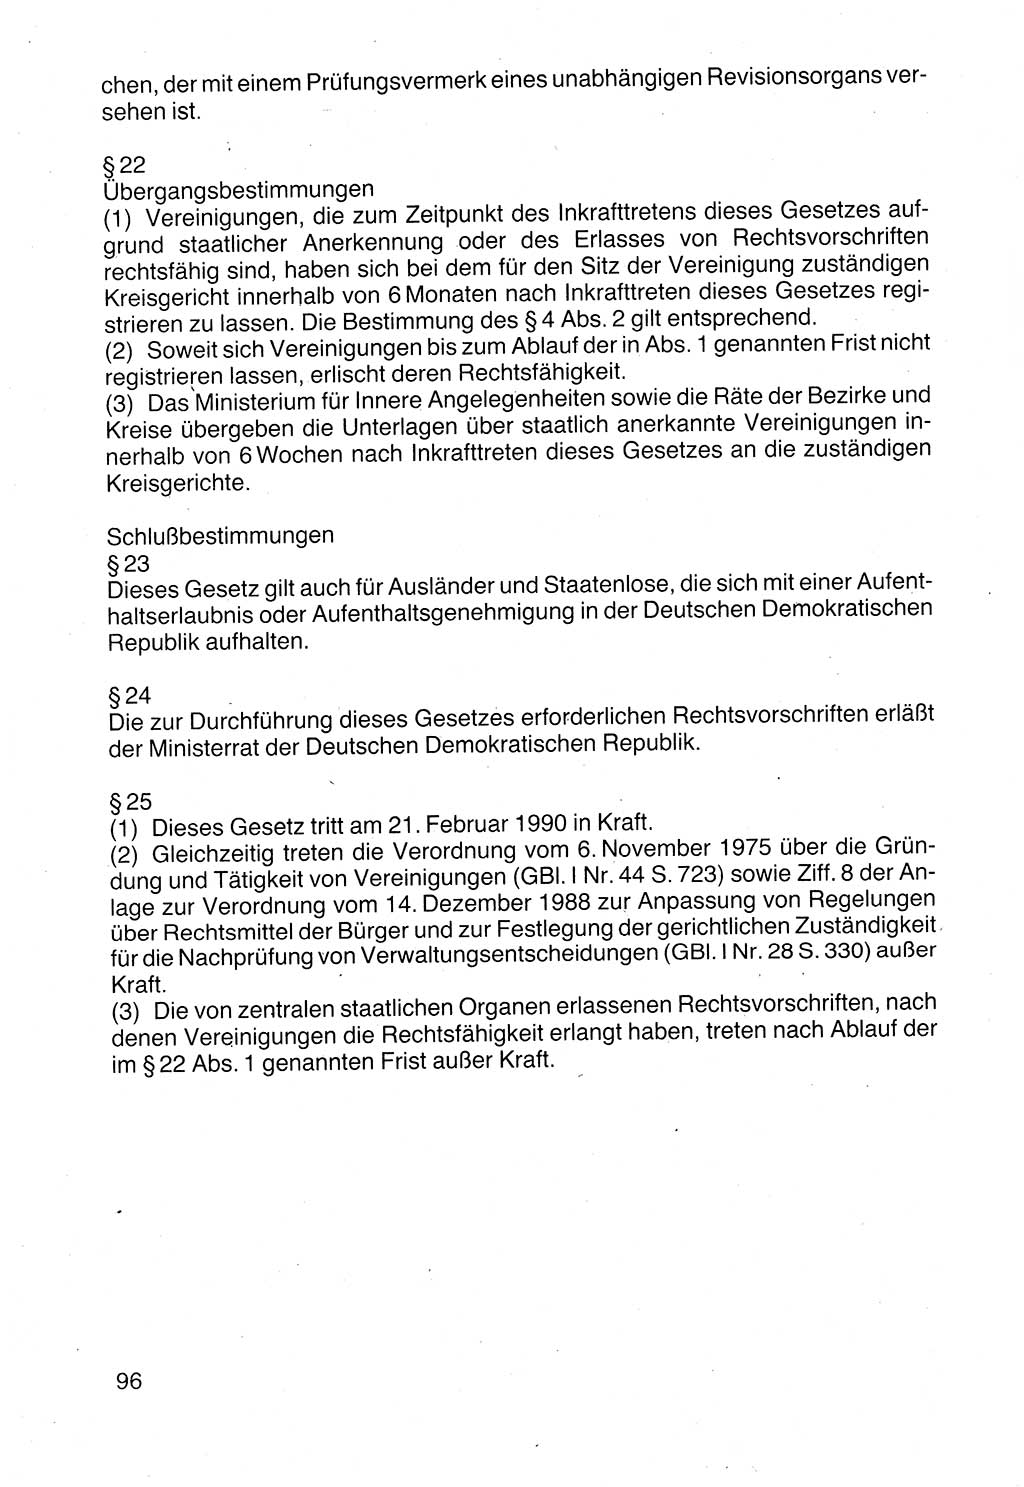 Politische Parteien und Bewegungen der DDR (Deutsche Demokratische Republik) über sich selbst 1990, Seite 96 (Pol. Part. Bew. DDR 1990, S. 96)